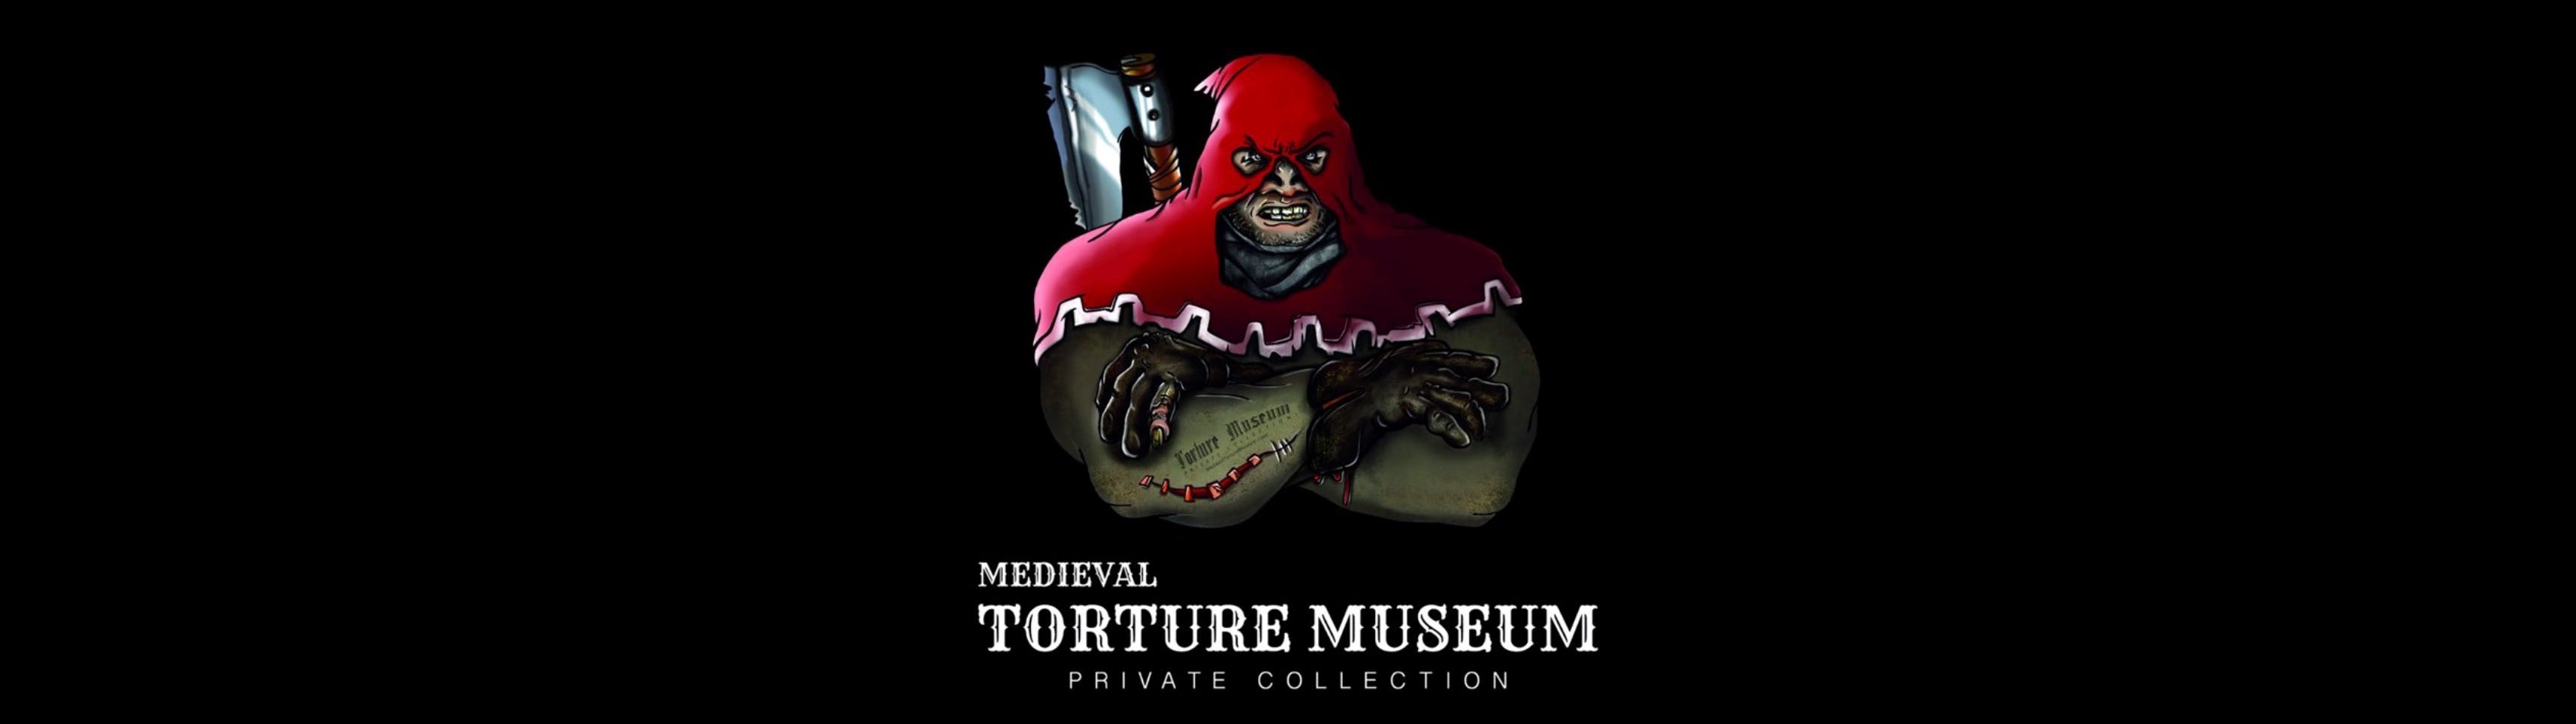 Średniowieczne Muzeum Tortur z audioprzewodnikiem, polowaniem na duchy i biletem do Tiny Art Gallery